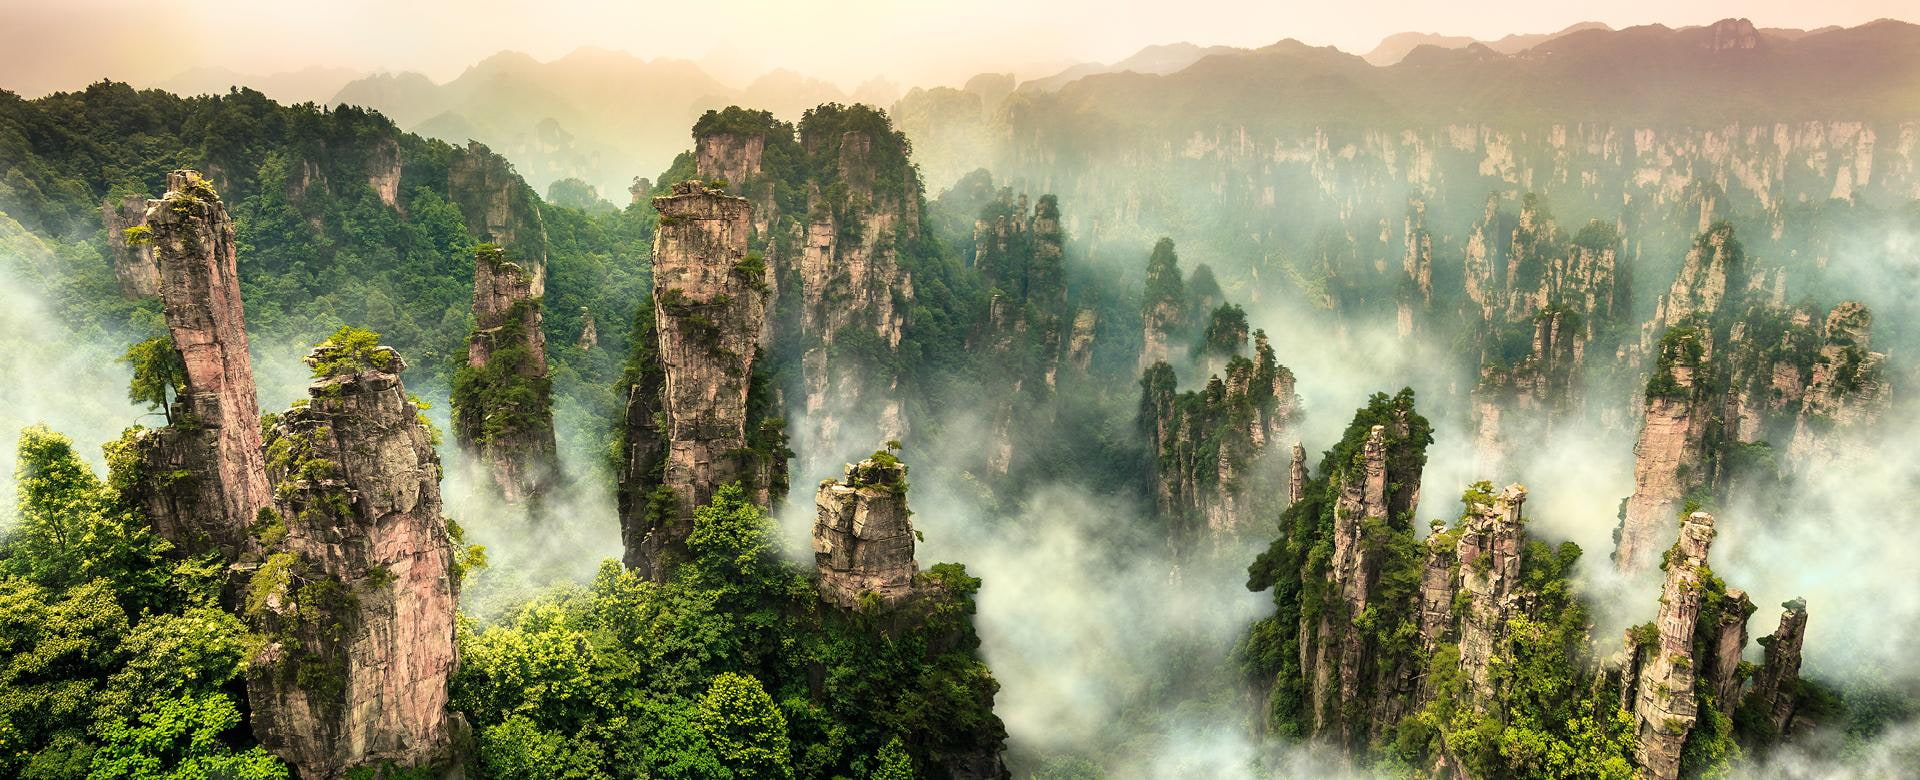 Atemberaubende Landschaft in China